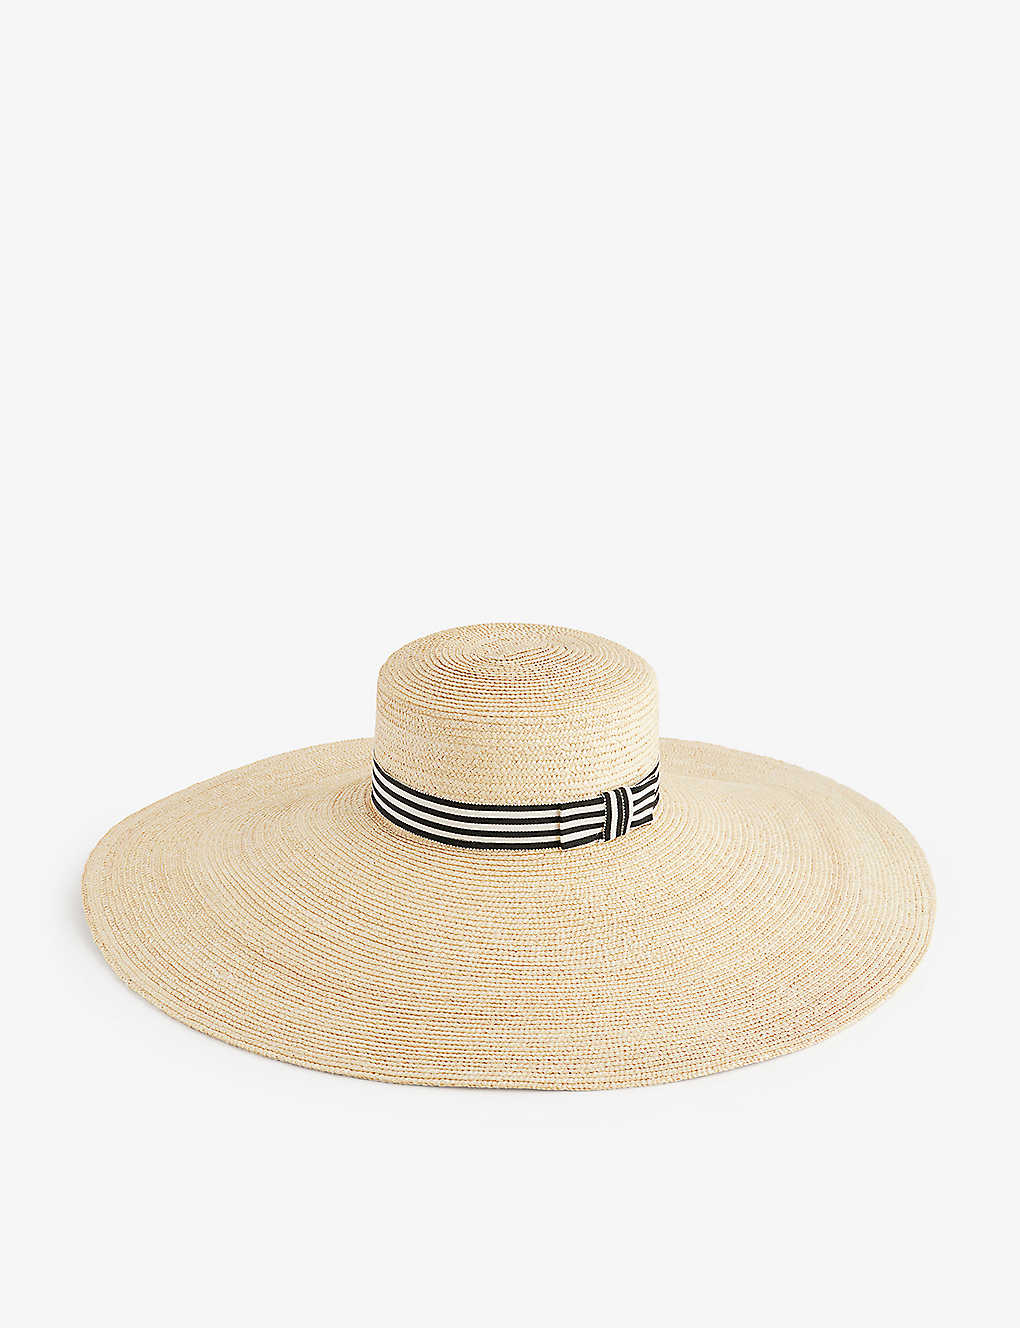 Nina Ricci Womens White Capeline Bow-embellished Straw Hat